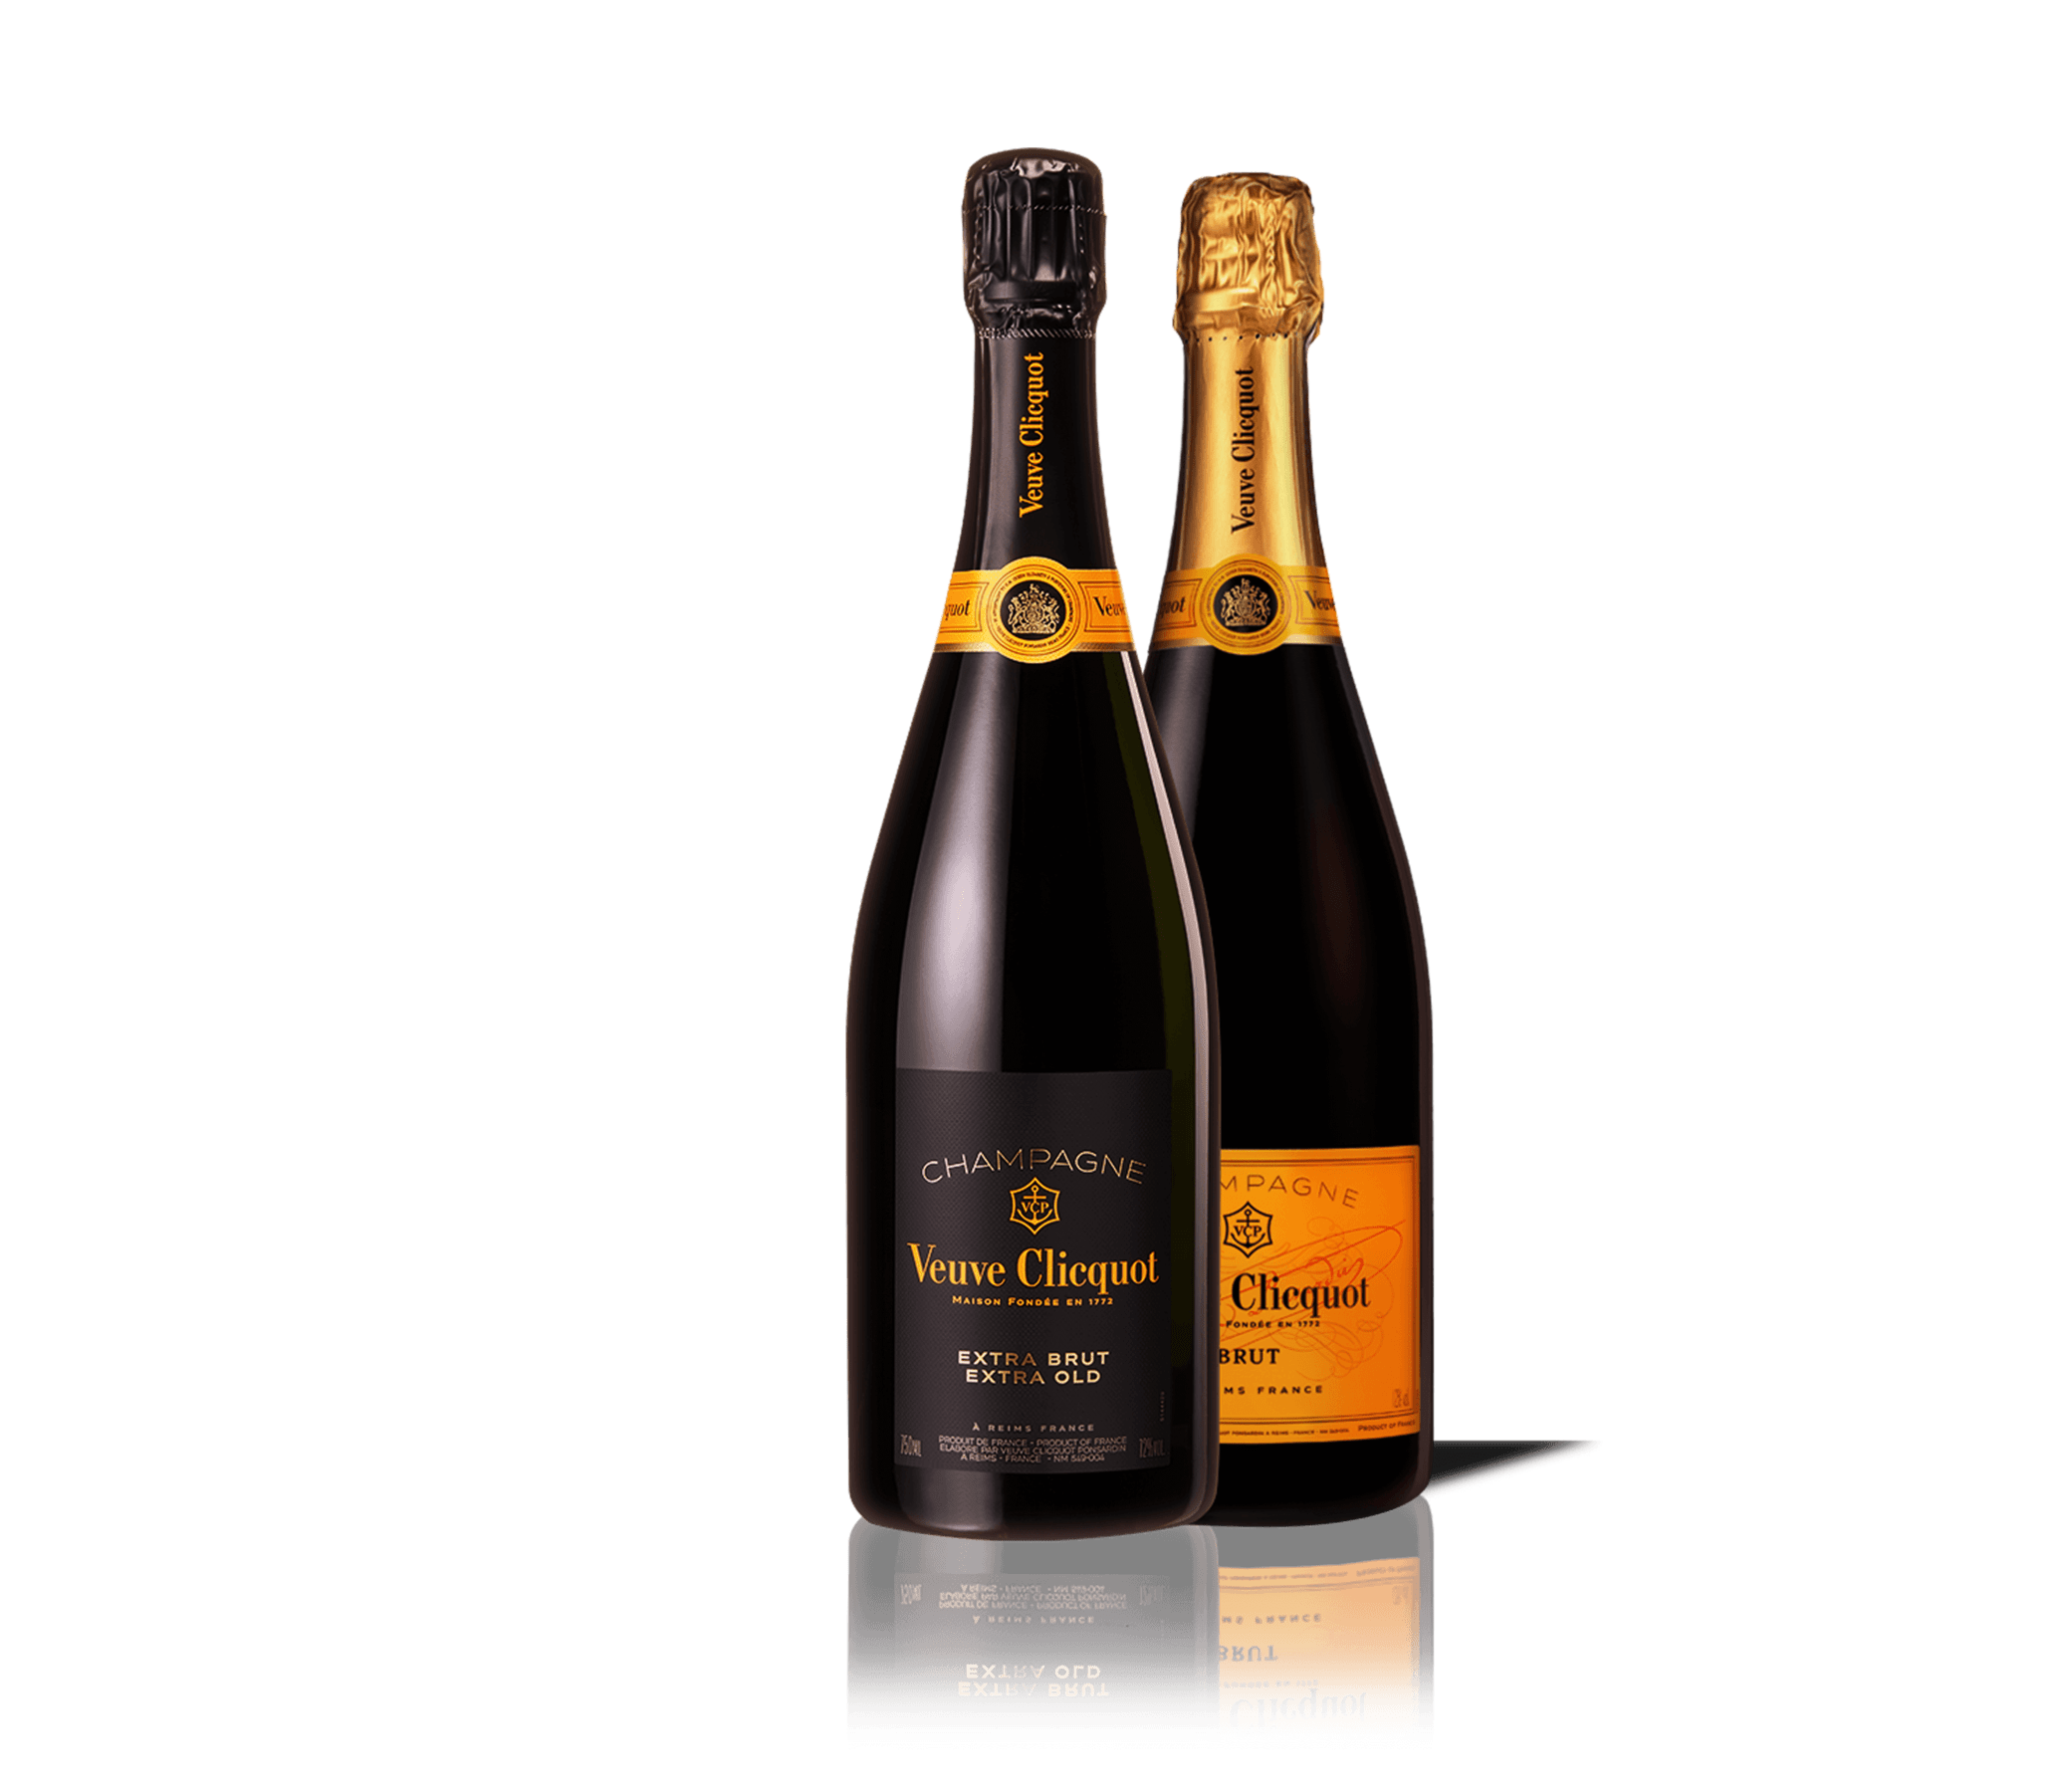 Bottiglia Veuve Clicquot Champagne Extra Brut Extra Old 1